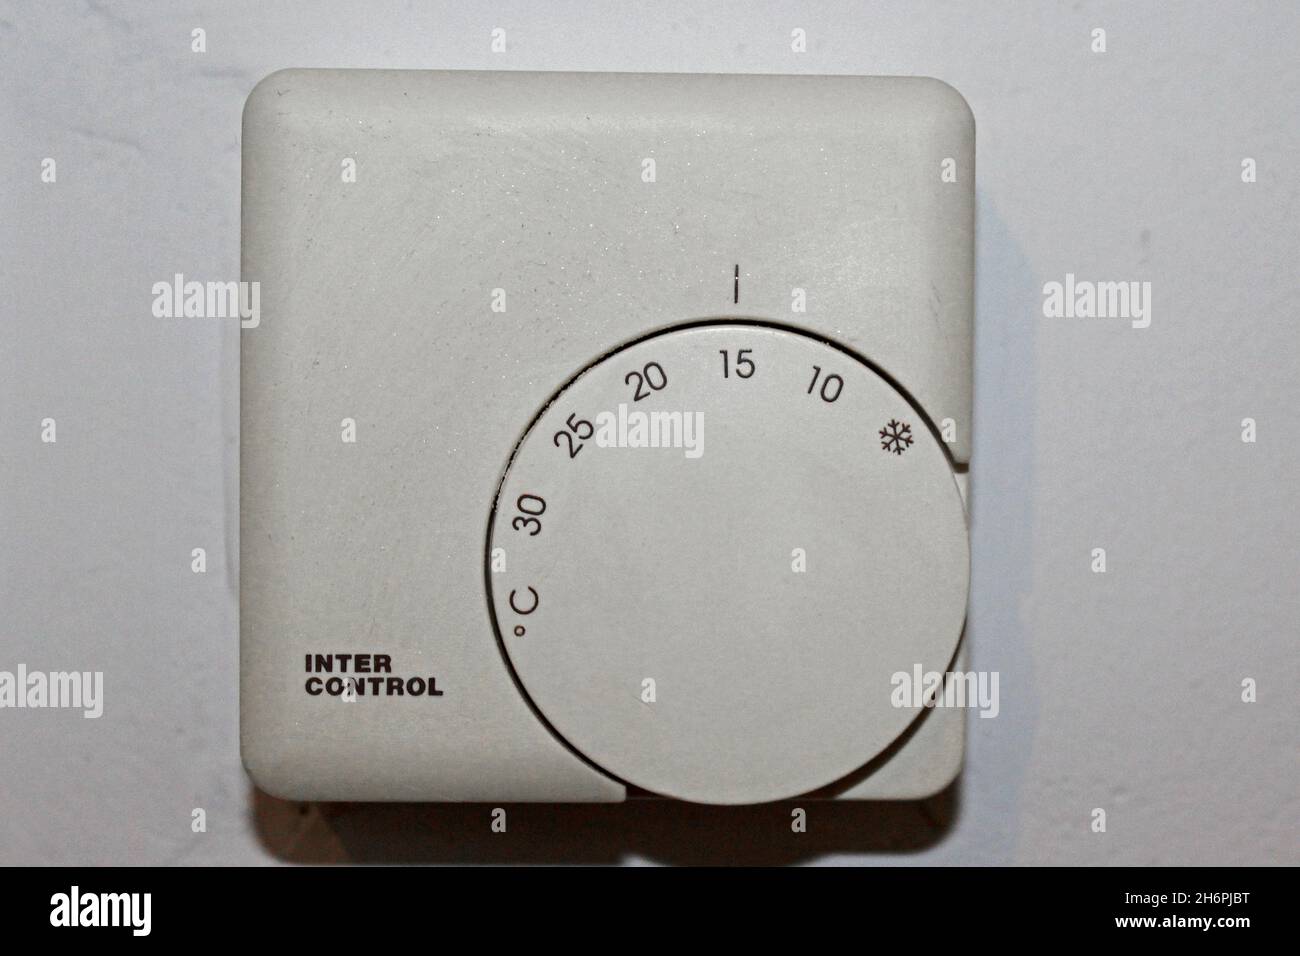 Weißer termostato zur Wärmeregulierung von 0 bis 30 Grad einstellbar, in einer Wohnung an einer Wand, auf 15 Grad eingestellt. Foto Stock